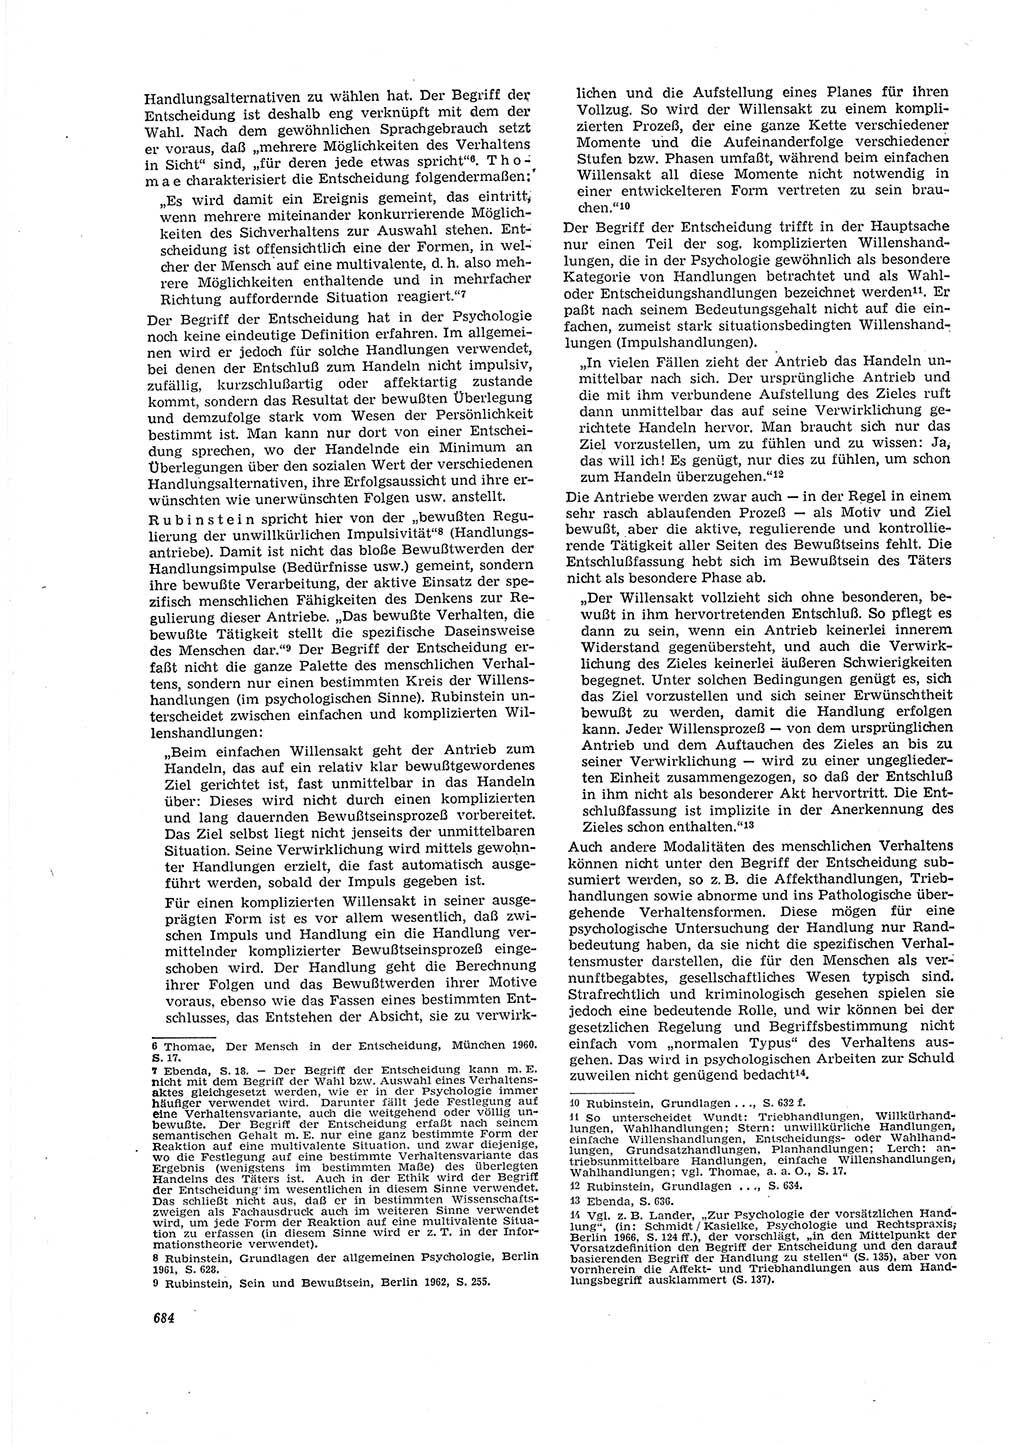 Neue Justiz (NJ), Zeitschrift für Recht und Rechtswissenschaft [Deutsche Demokratische Republik (DDR)], 20. Jahrgang 1966, Seite 684 (NJ DDR 1966, S. 684)